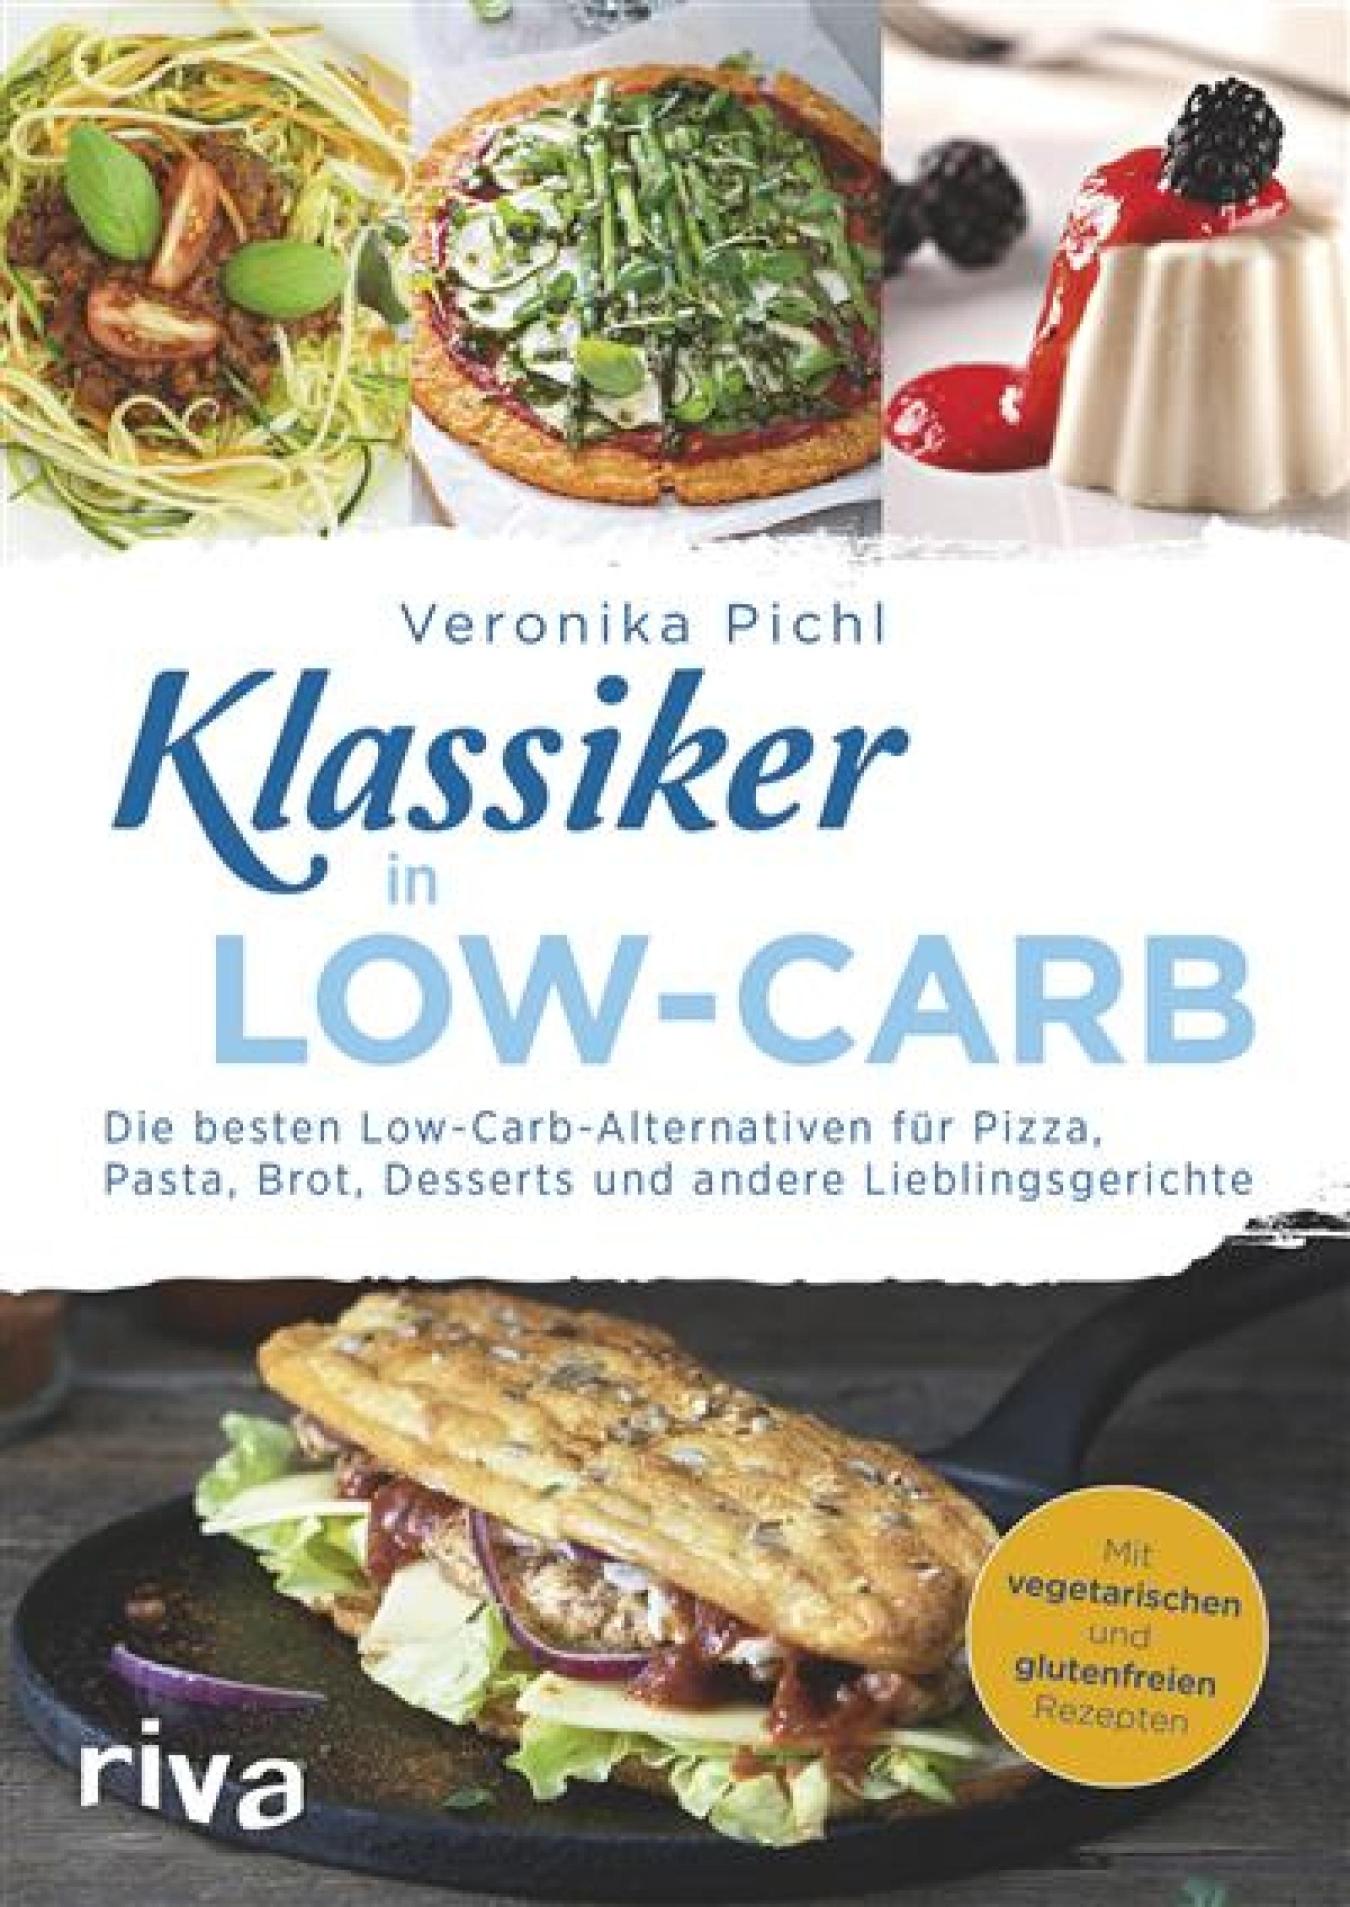 Klassiker Low-Carb Die besten kohlenhydratarmen Alternativen für Pizza, Pasta, Brot, Desserts und andere Lieblingsgerichte